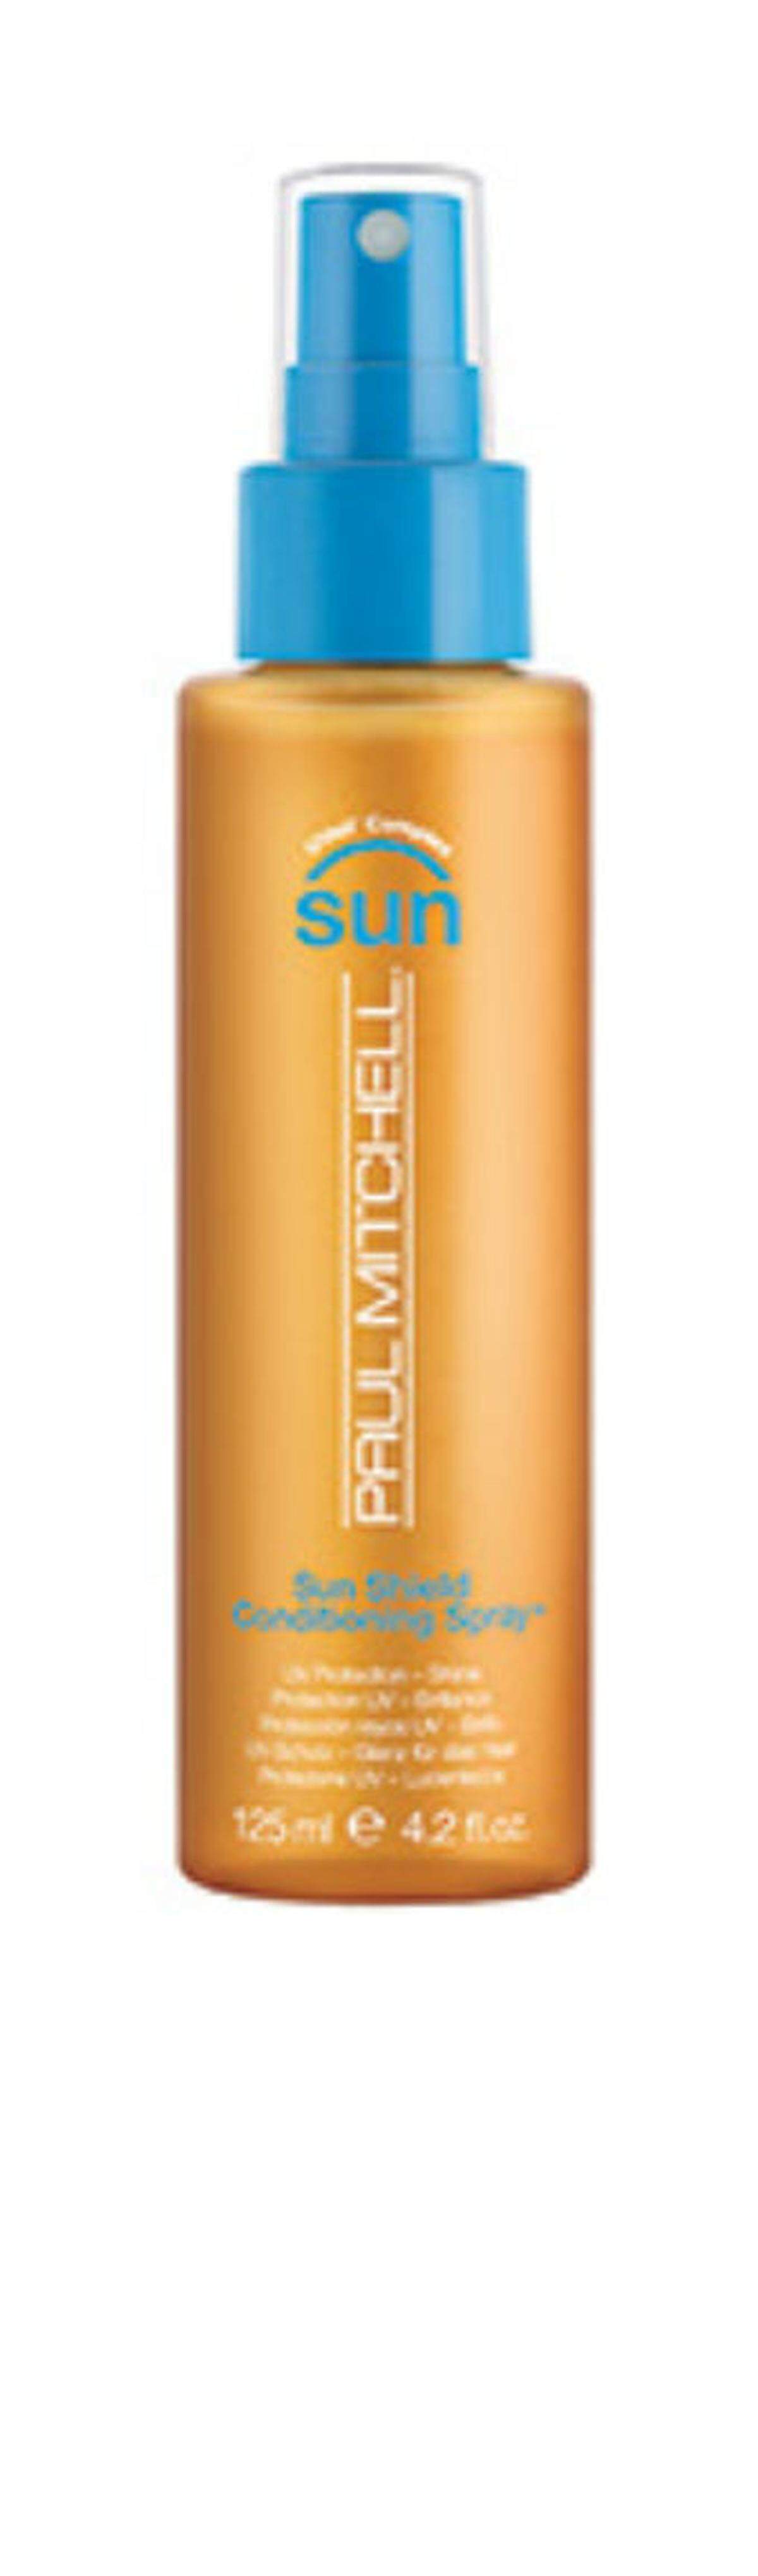 Der Sun Shield Conditioning Spray von Paul Mitchell soll das Haar vor schädlichen UV-Strahlen schützen. Aufgetragen wird der Spray während des Sonnenbadens und soll dem Haar zusätzlich Glanz verleihen, 23,50 Euro. 